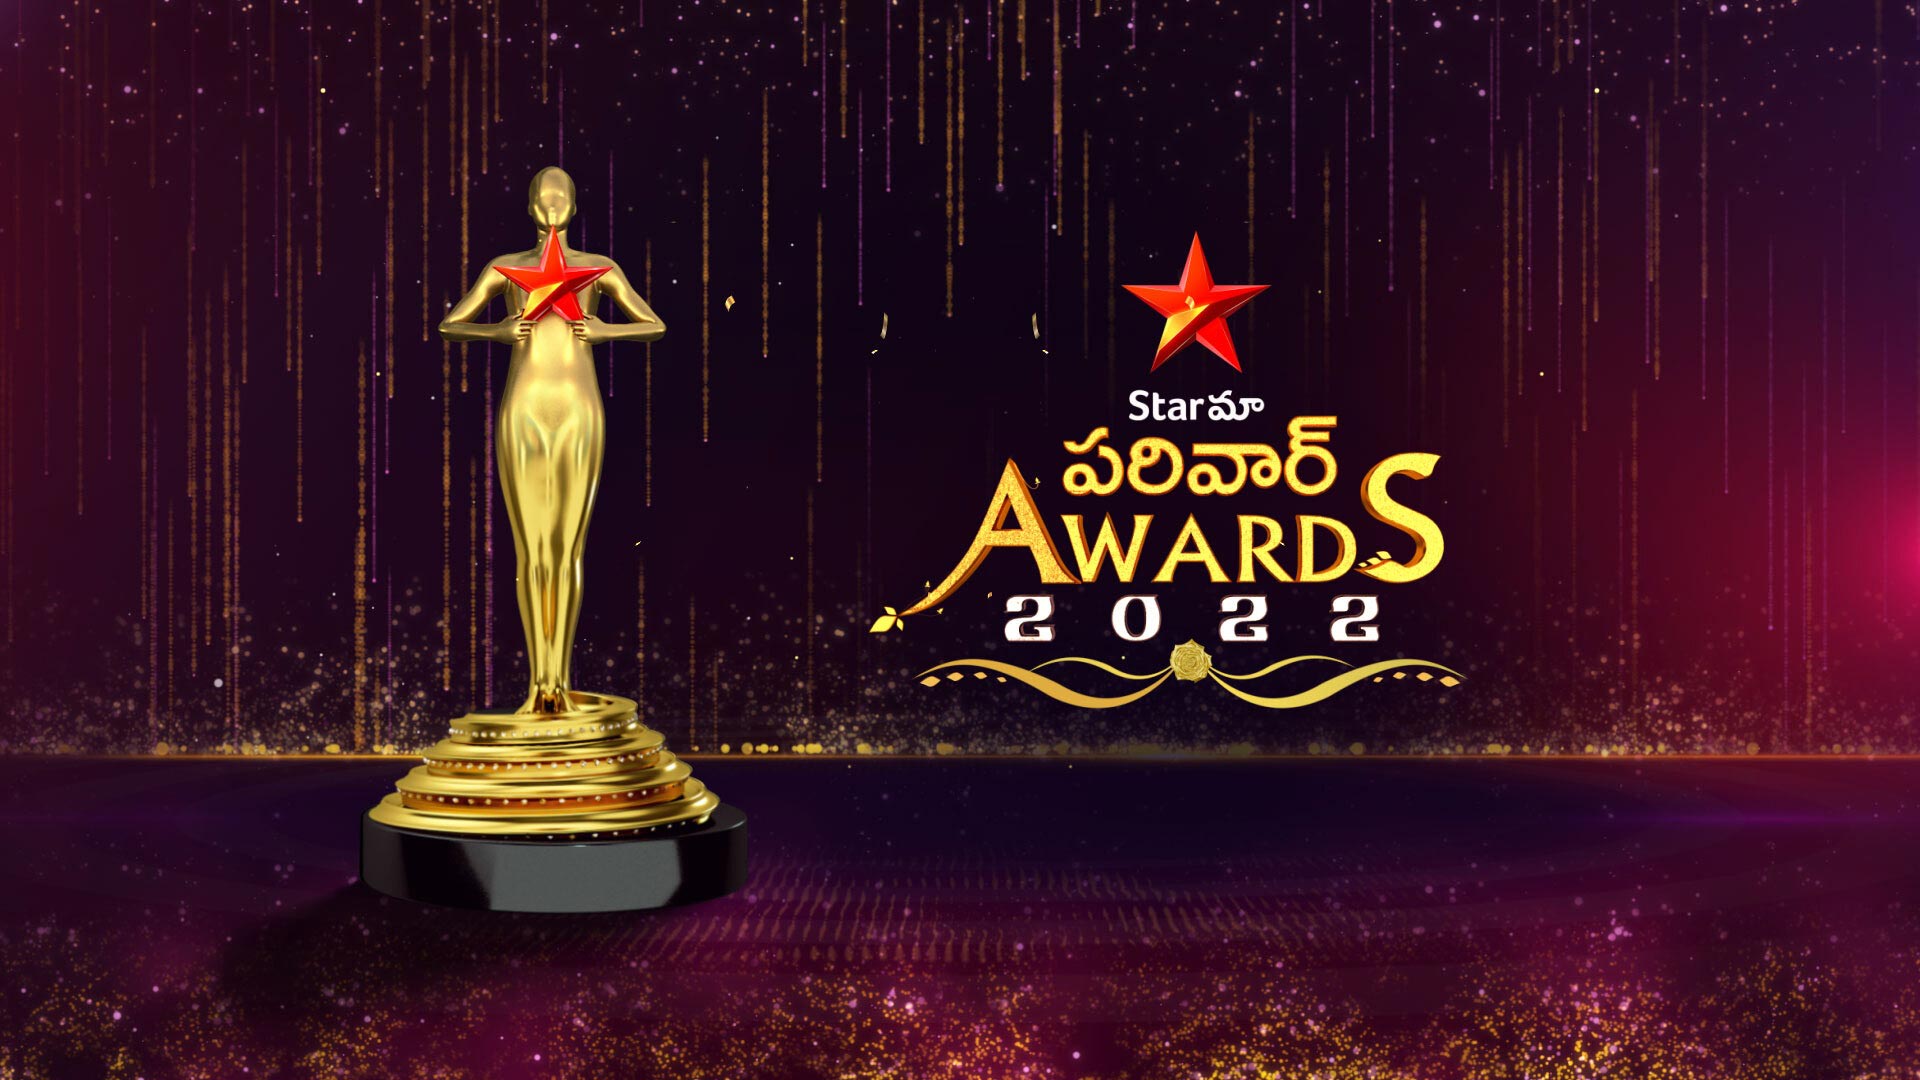 Star Maa Parivaar Awards 2022 Promo Disney+ Hotstar